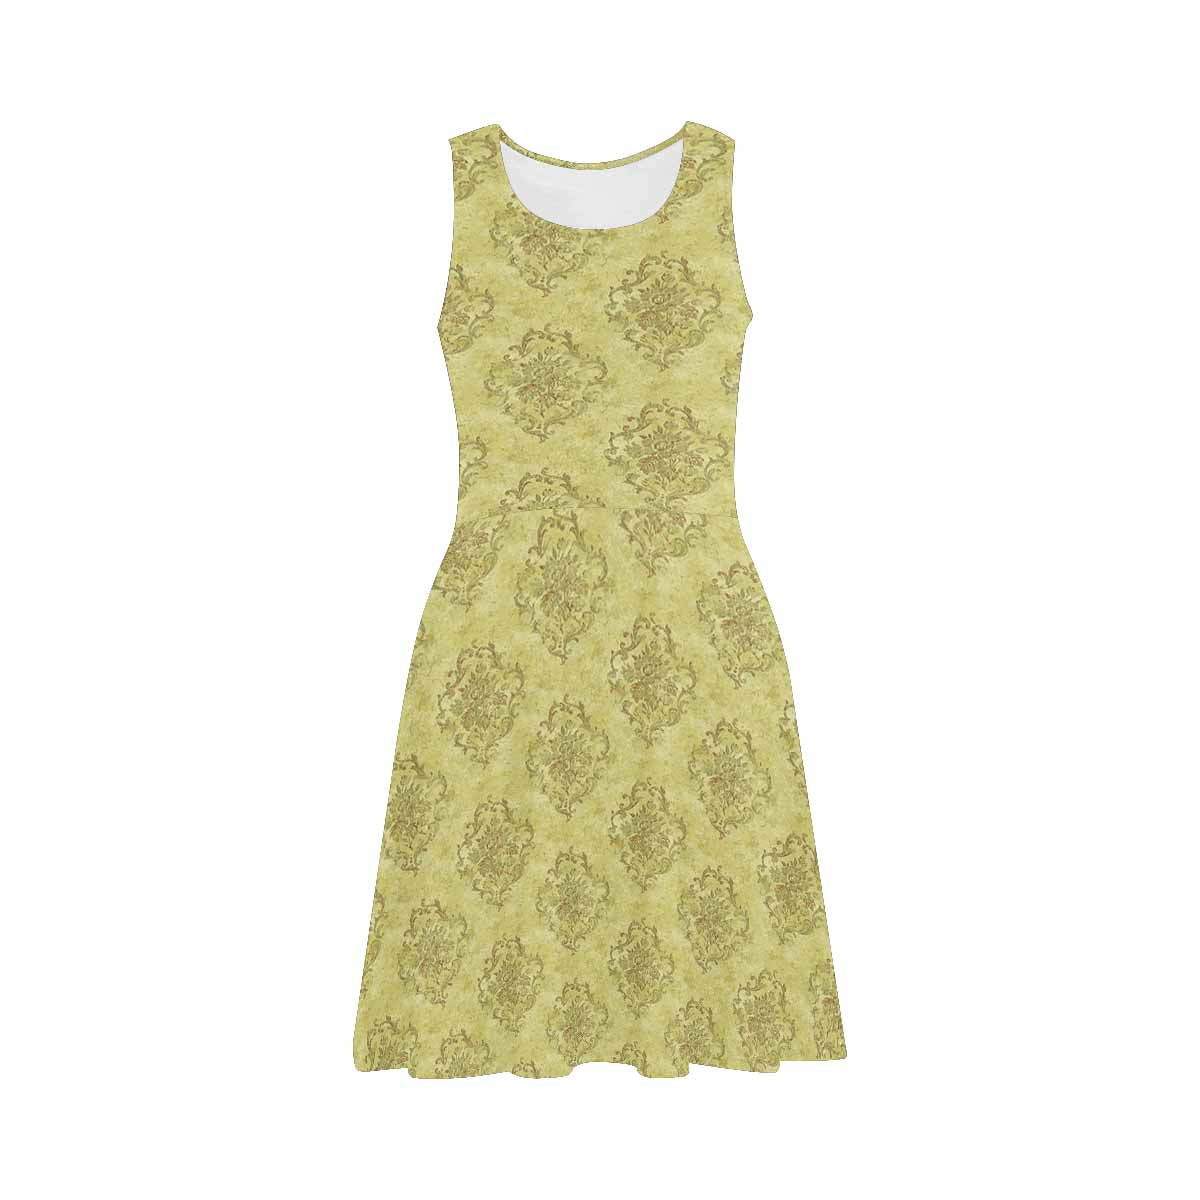 Antique General summer dress, MODEL 09534, design 05